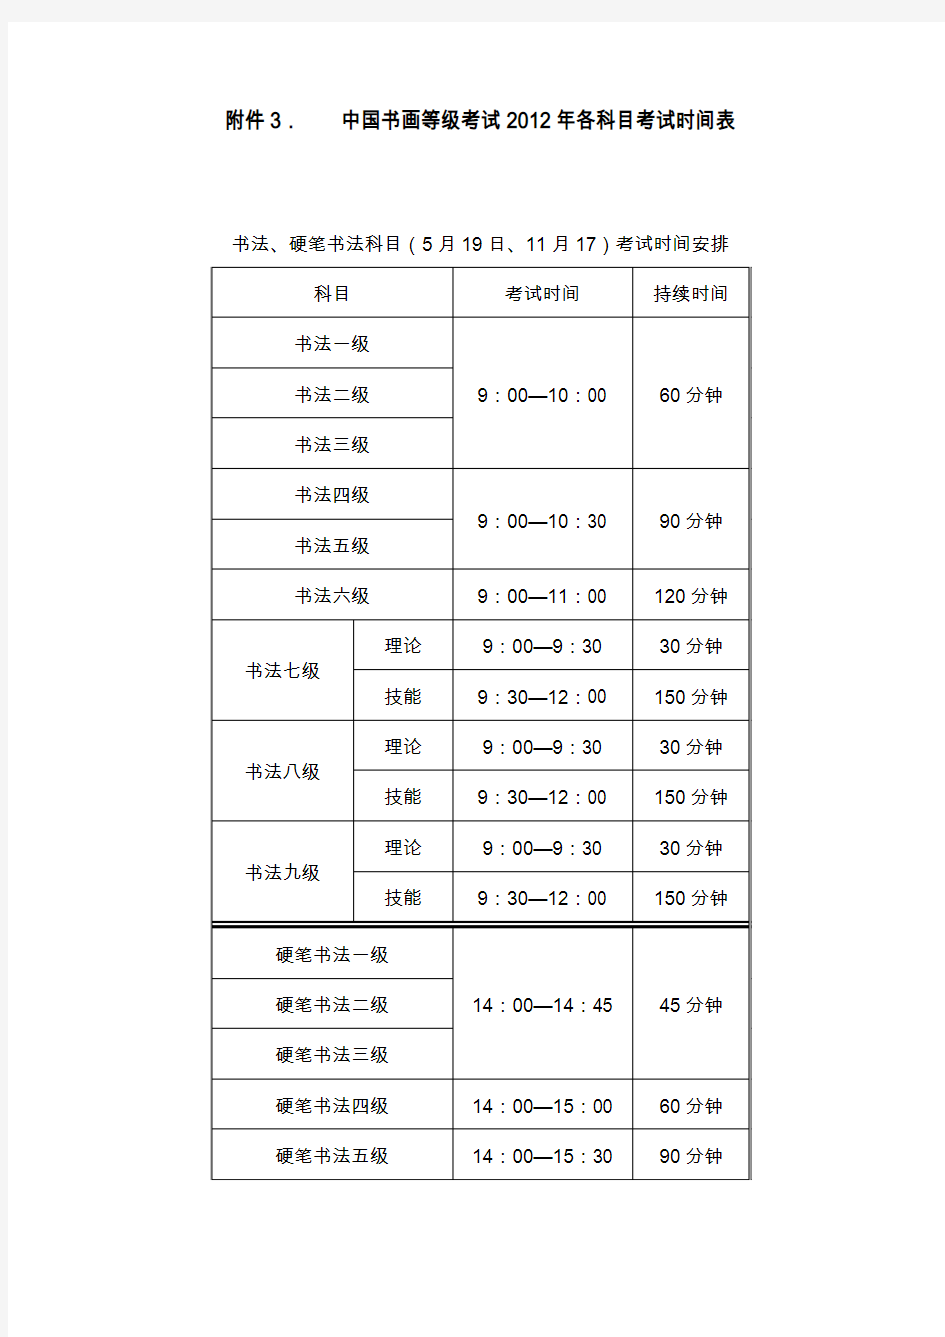 中国书画等级考试各科目考试时间表